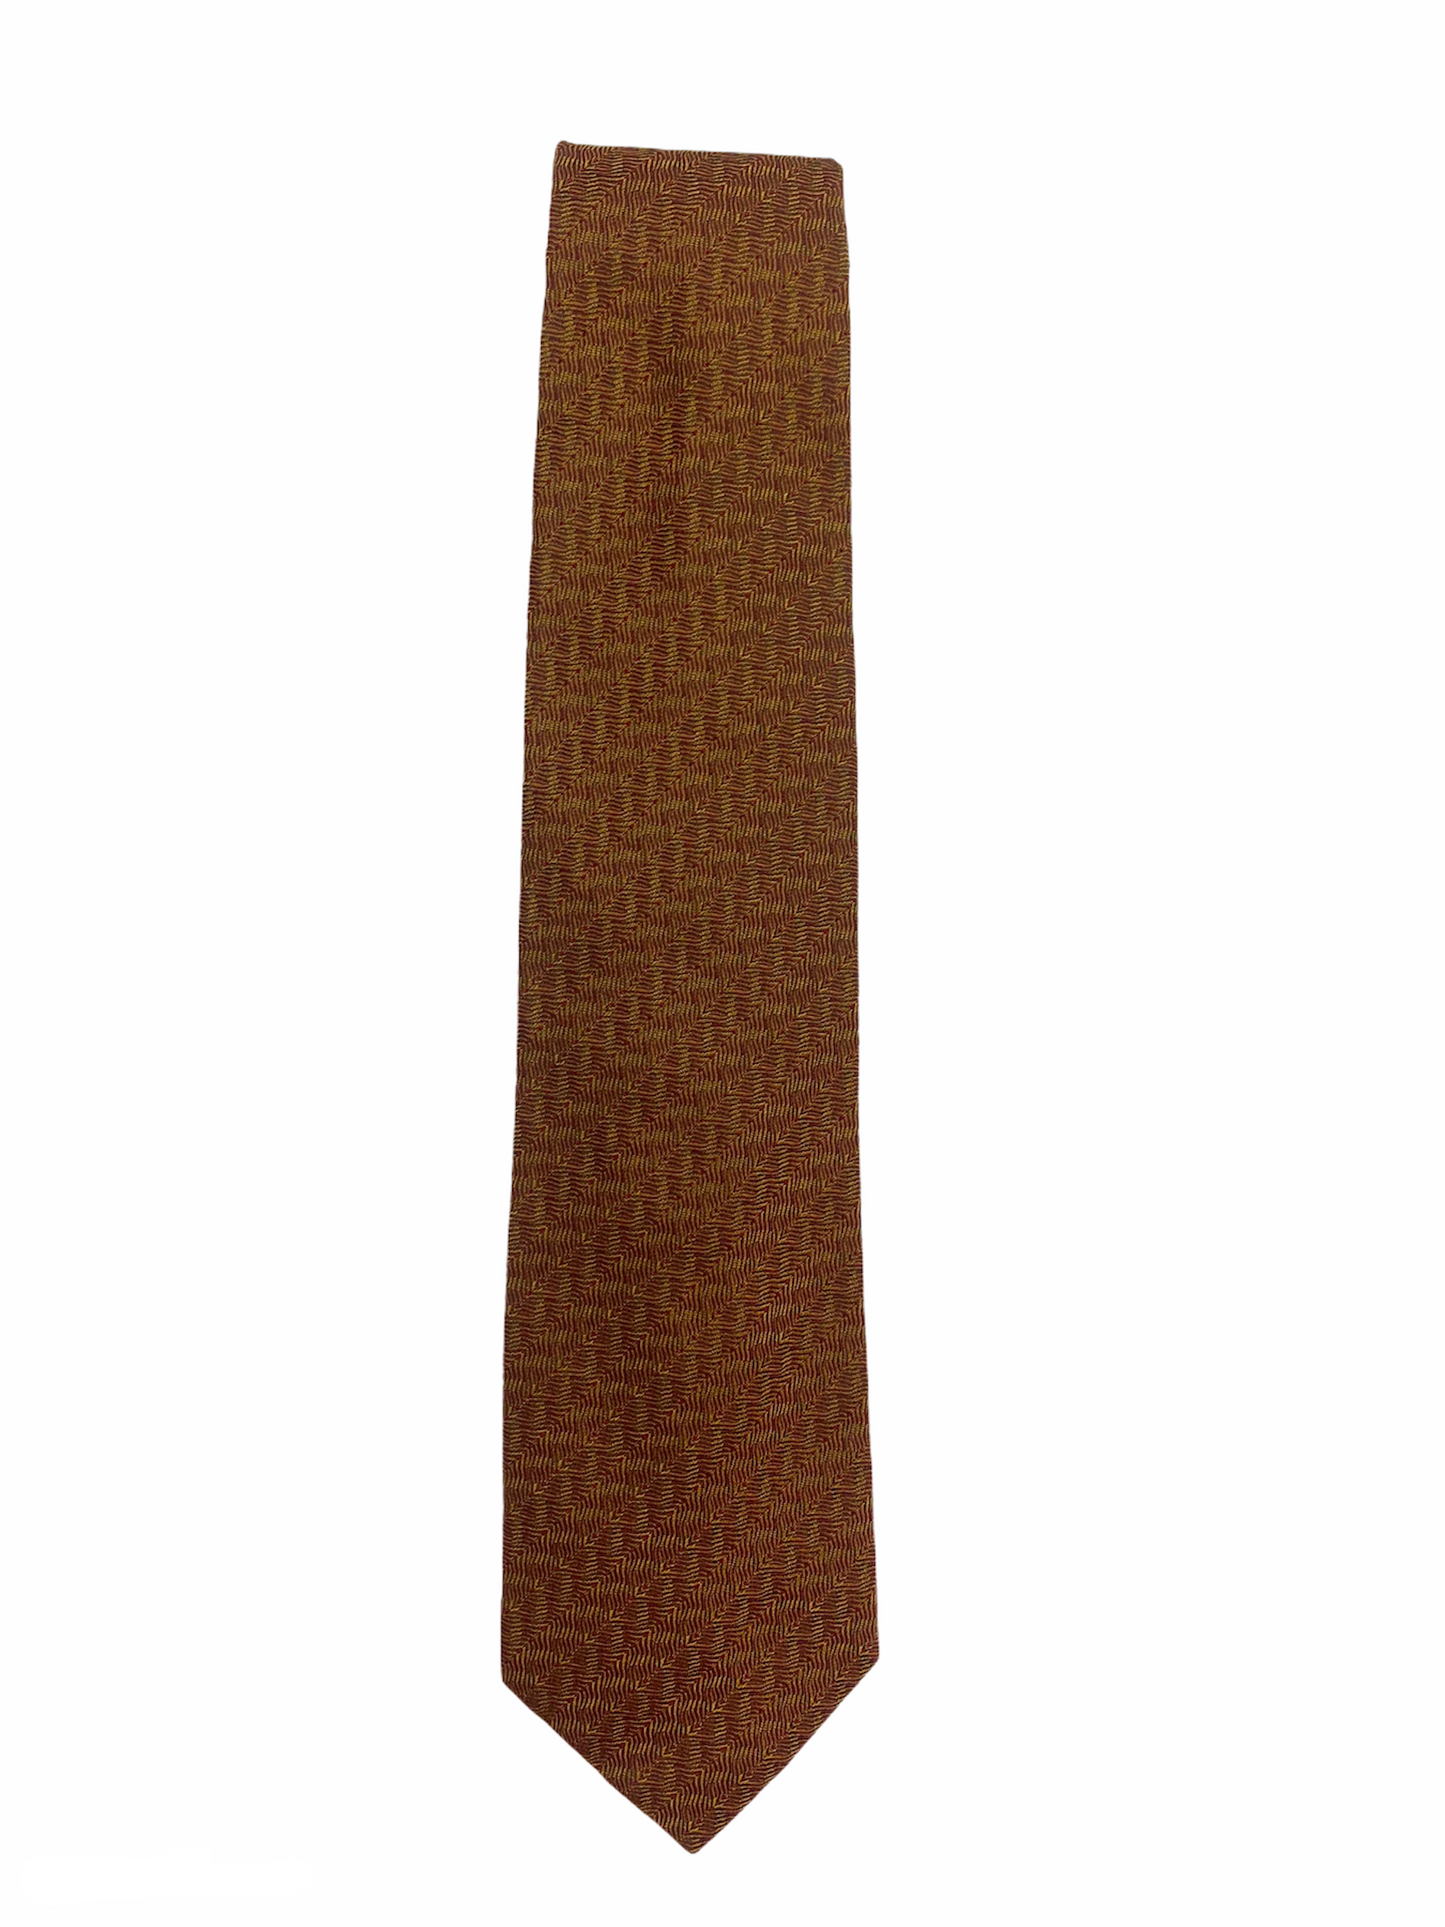 Cravate PIERRE CARDIN marron/cuivre, fait à la main, en soie 100%.